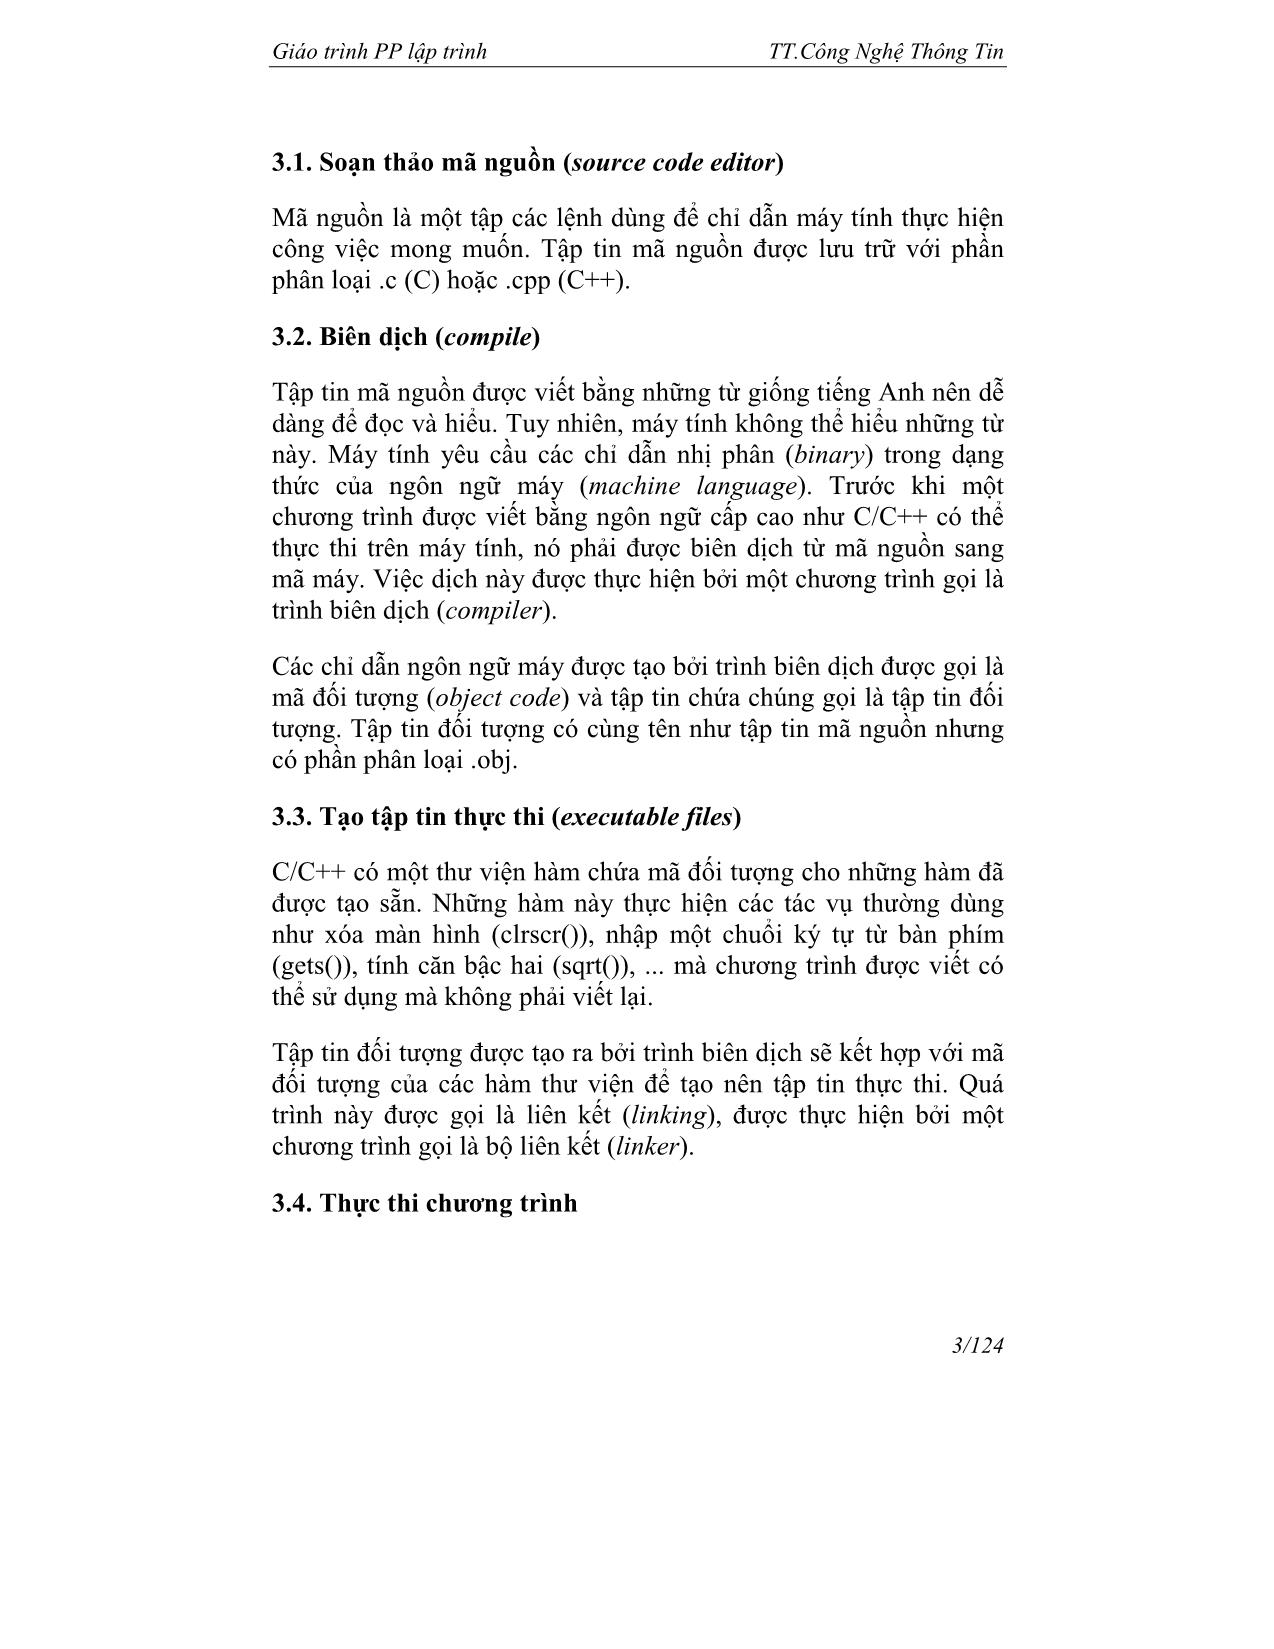 Giáo trình về phương pháp lập trình trang 4